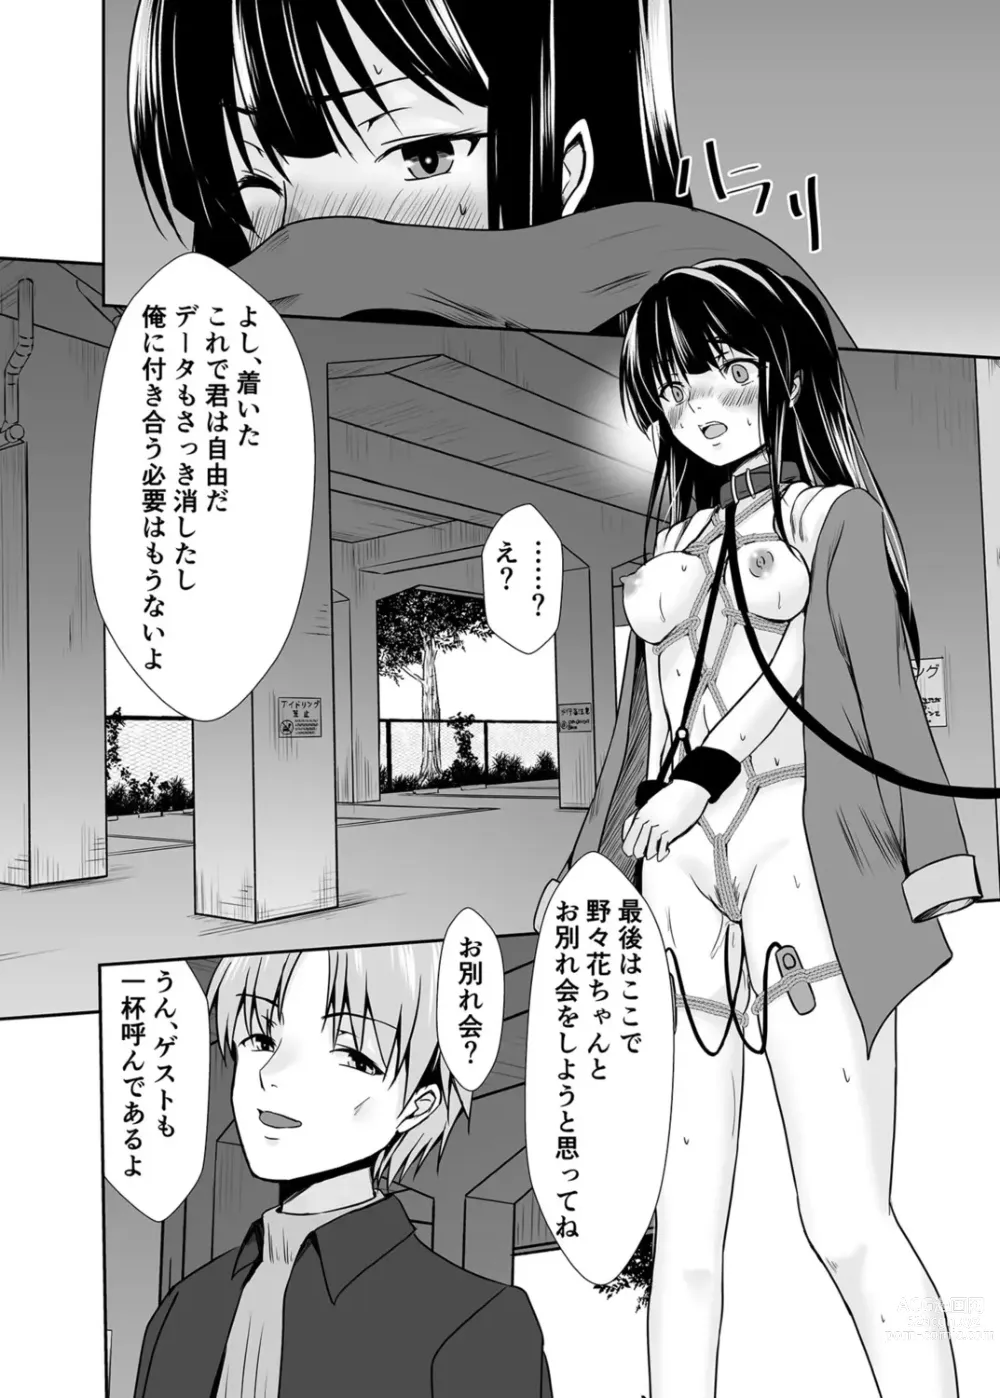 Page 233 of manga Haitoku no Gouka Kyakusen ~Slave Cruise~ Denshi Tankoubon